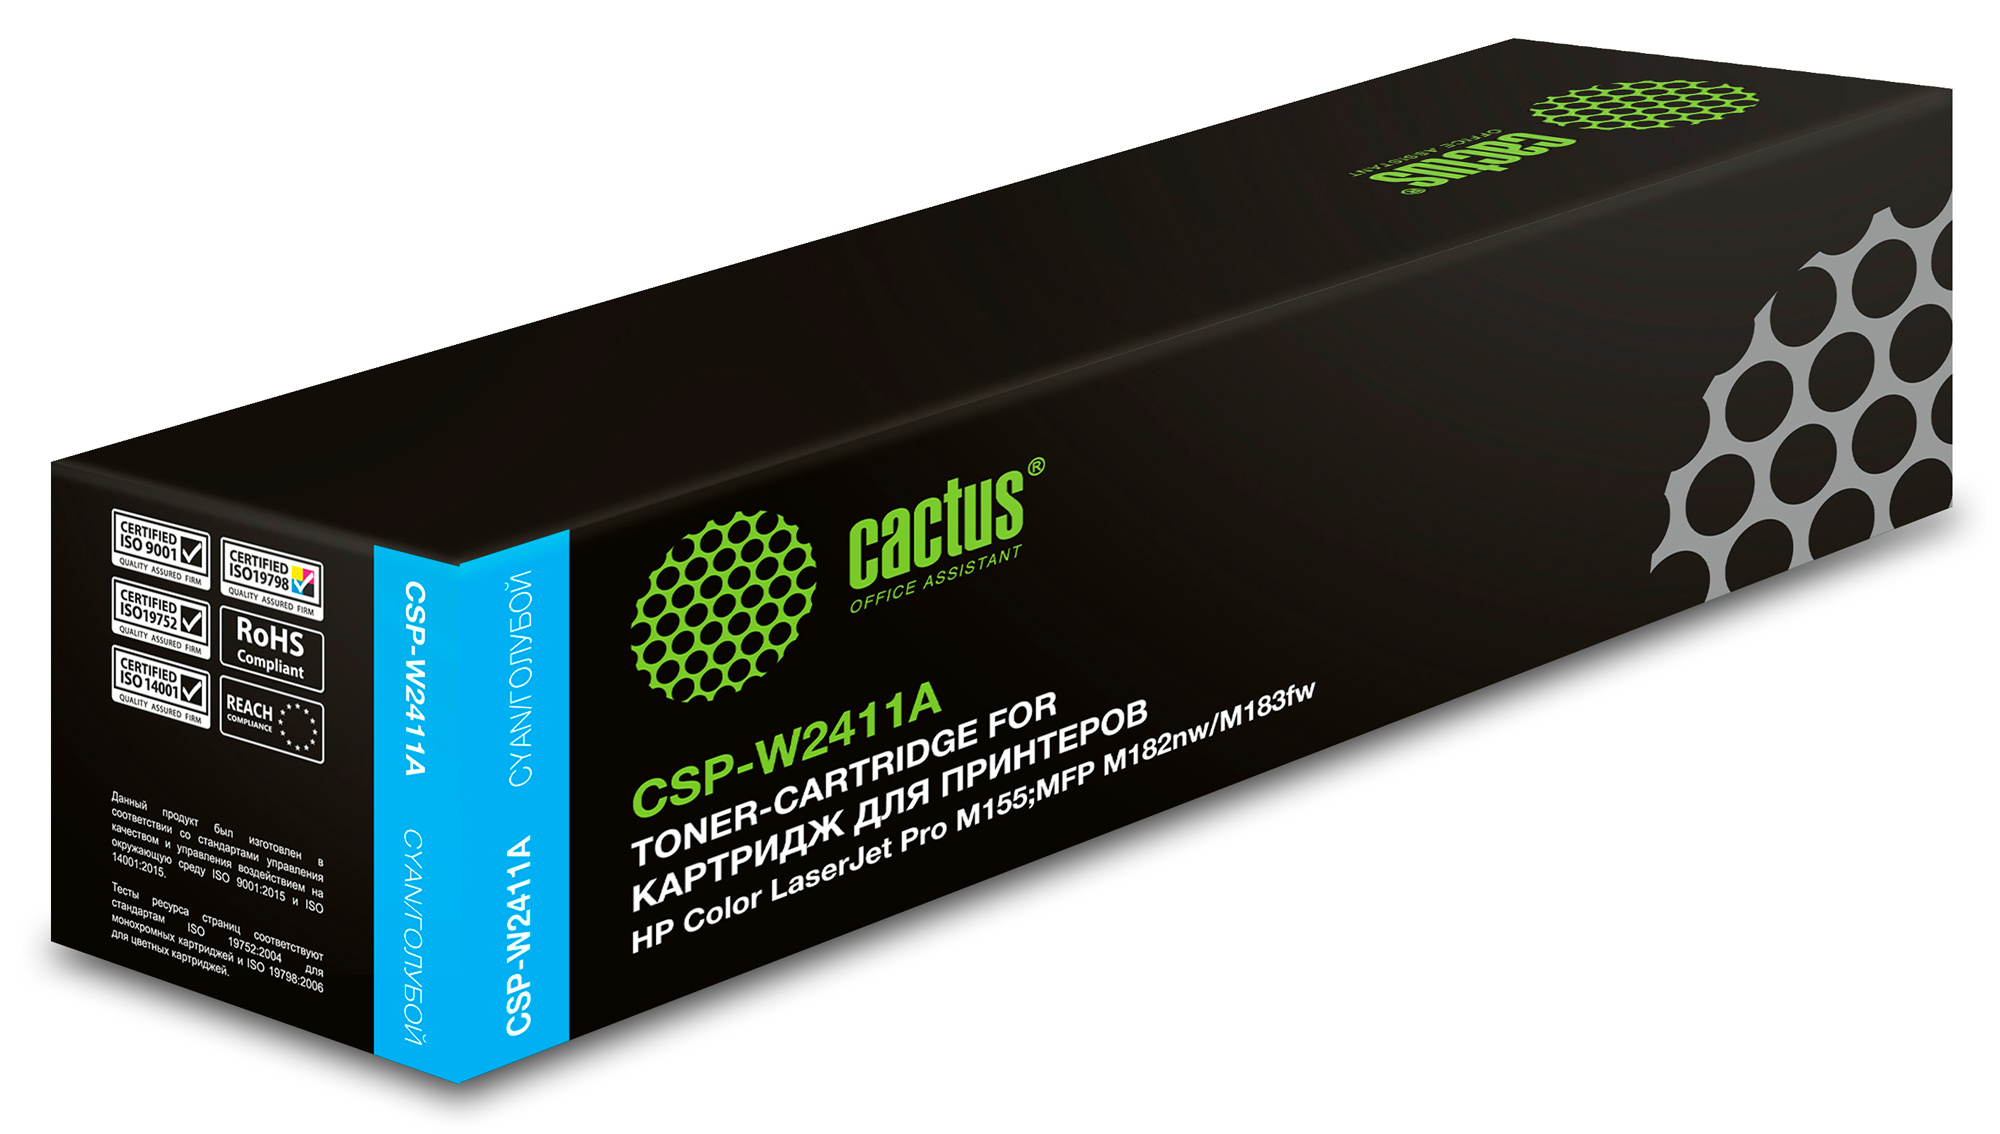   Cactus CSP-W2411A 216A  (850.)  HP Color LaserJet Pro M155,MFP M182nw/M183fw